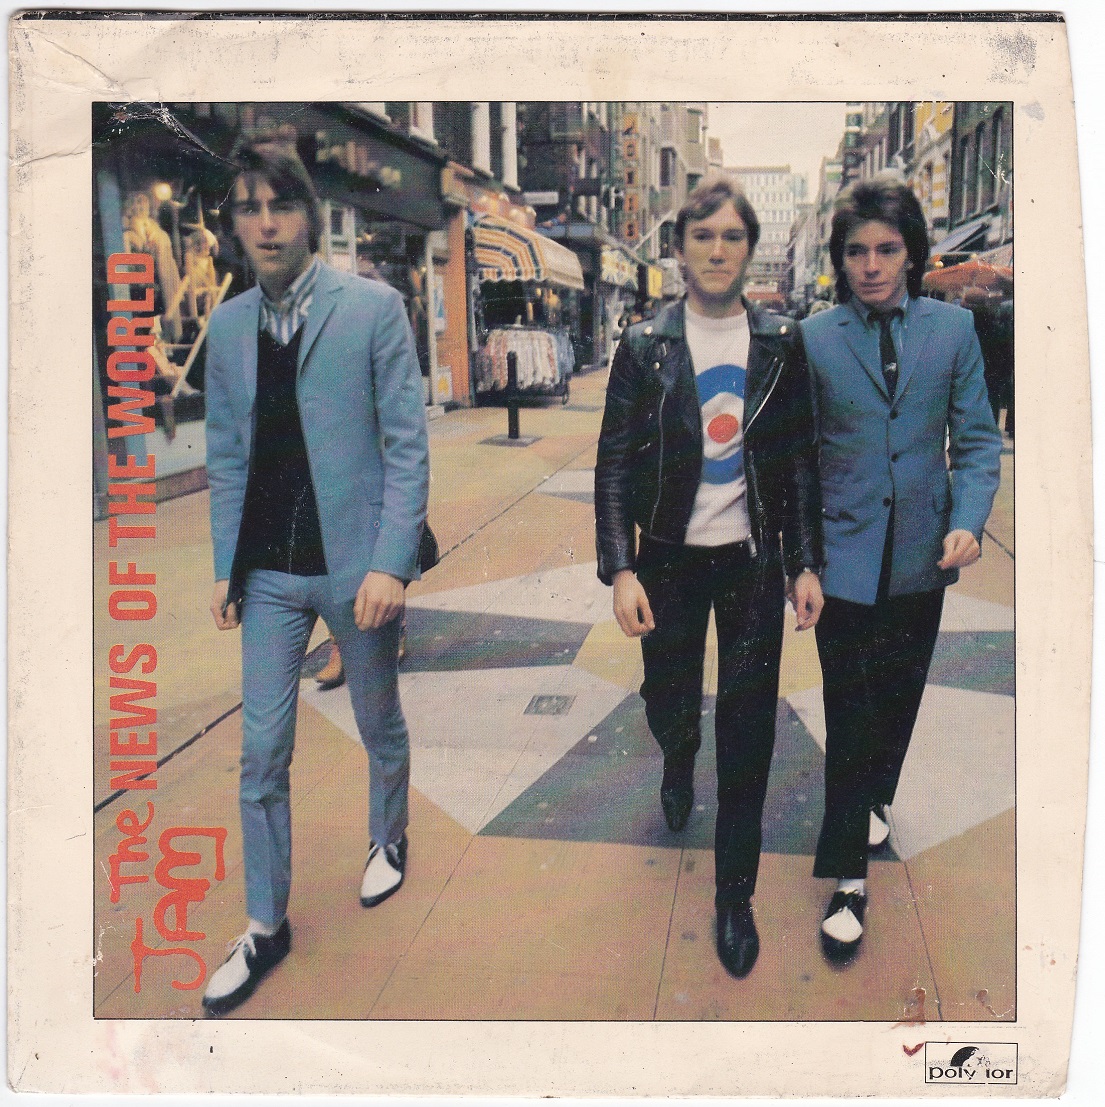 Listed on Ebay ...

The Jam - News of the World, 7' vinyl single, c.1978

ebay.co.uk/itm/3867974929…

#vinyl #thejam #paulweller #modrevival